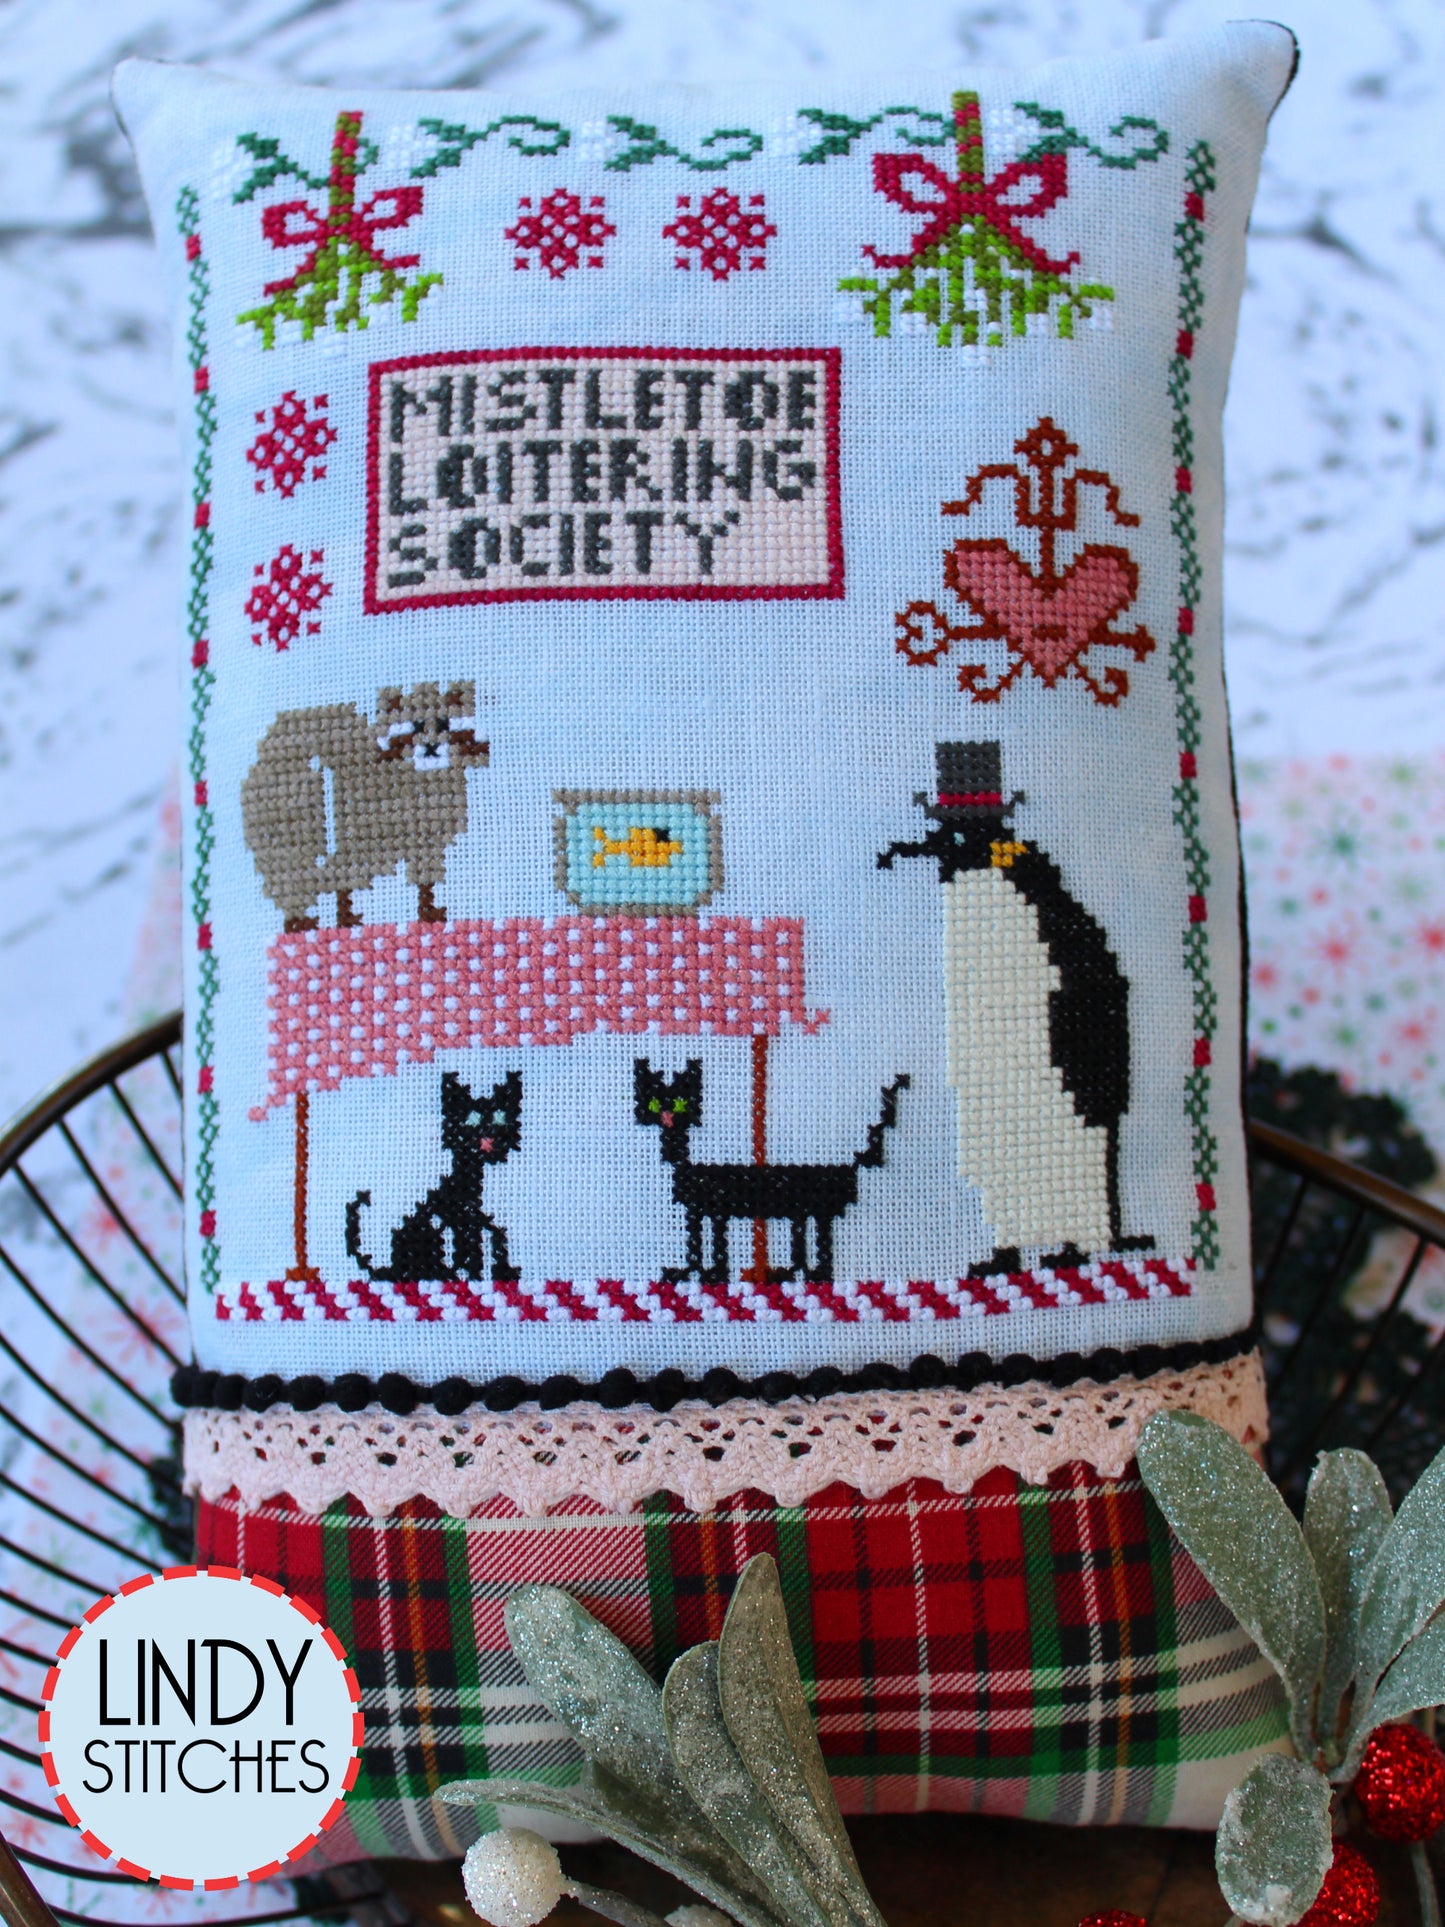 Mistletoe Loitering Society Cross Stitch Pattern by Lindy Stitches